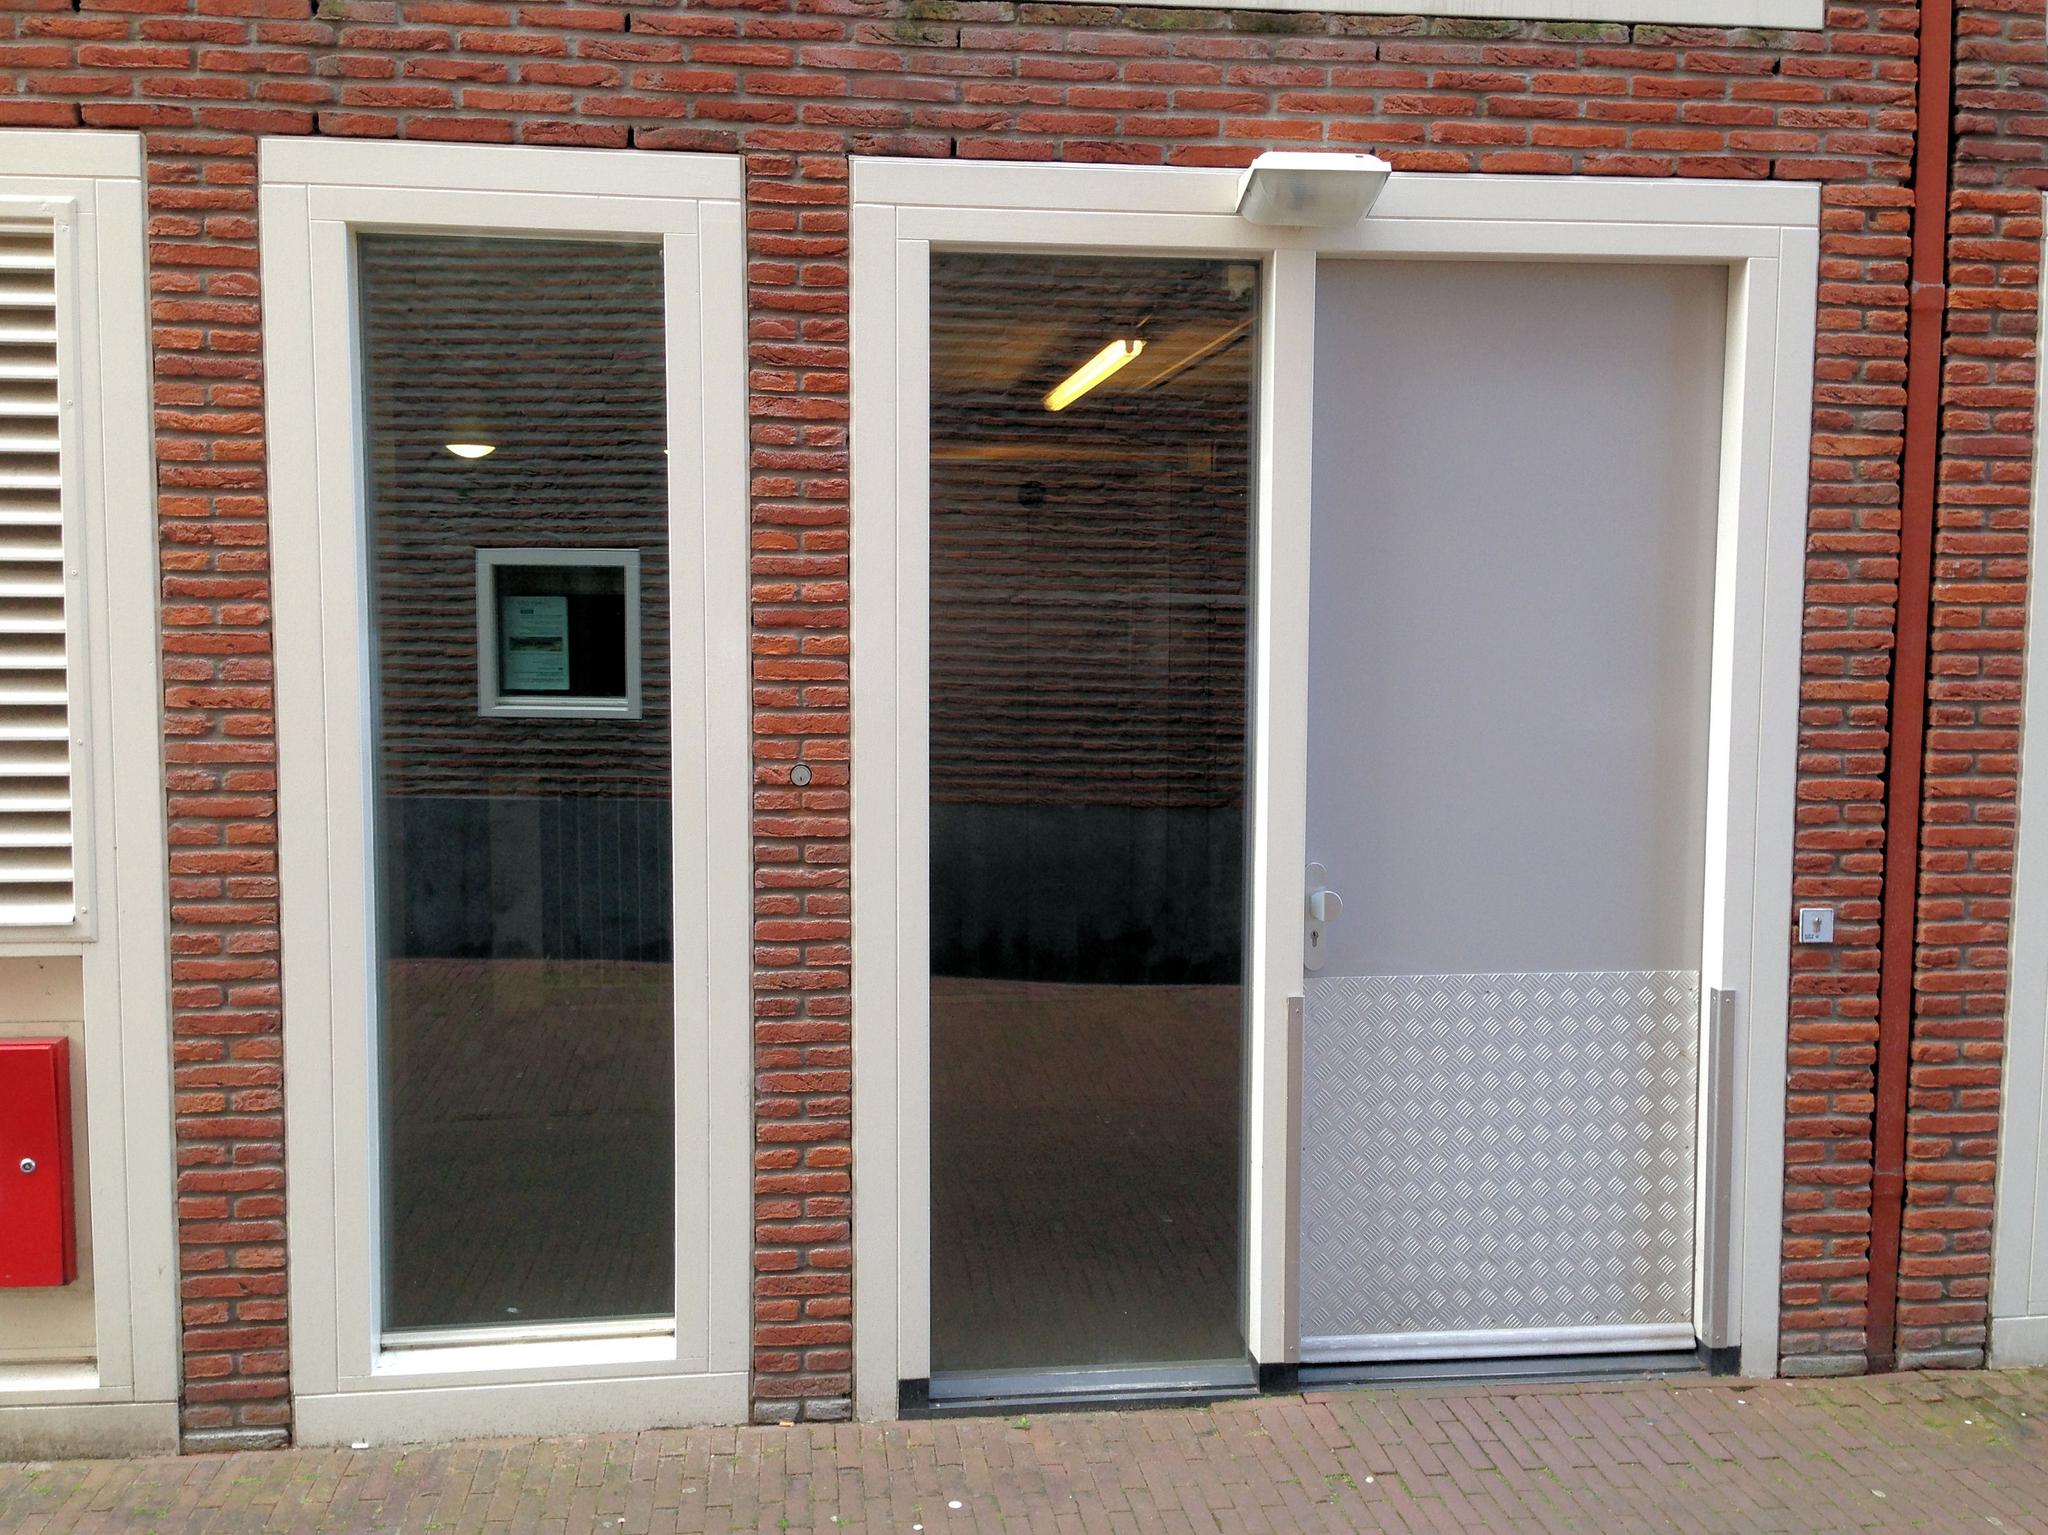 Oude Zijlvest 29209, Haarlem Haarlem